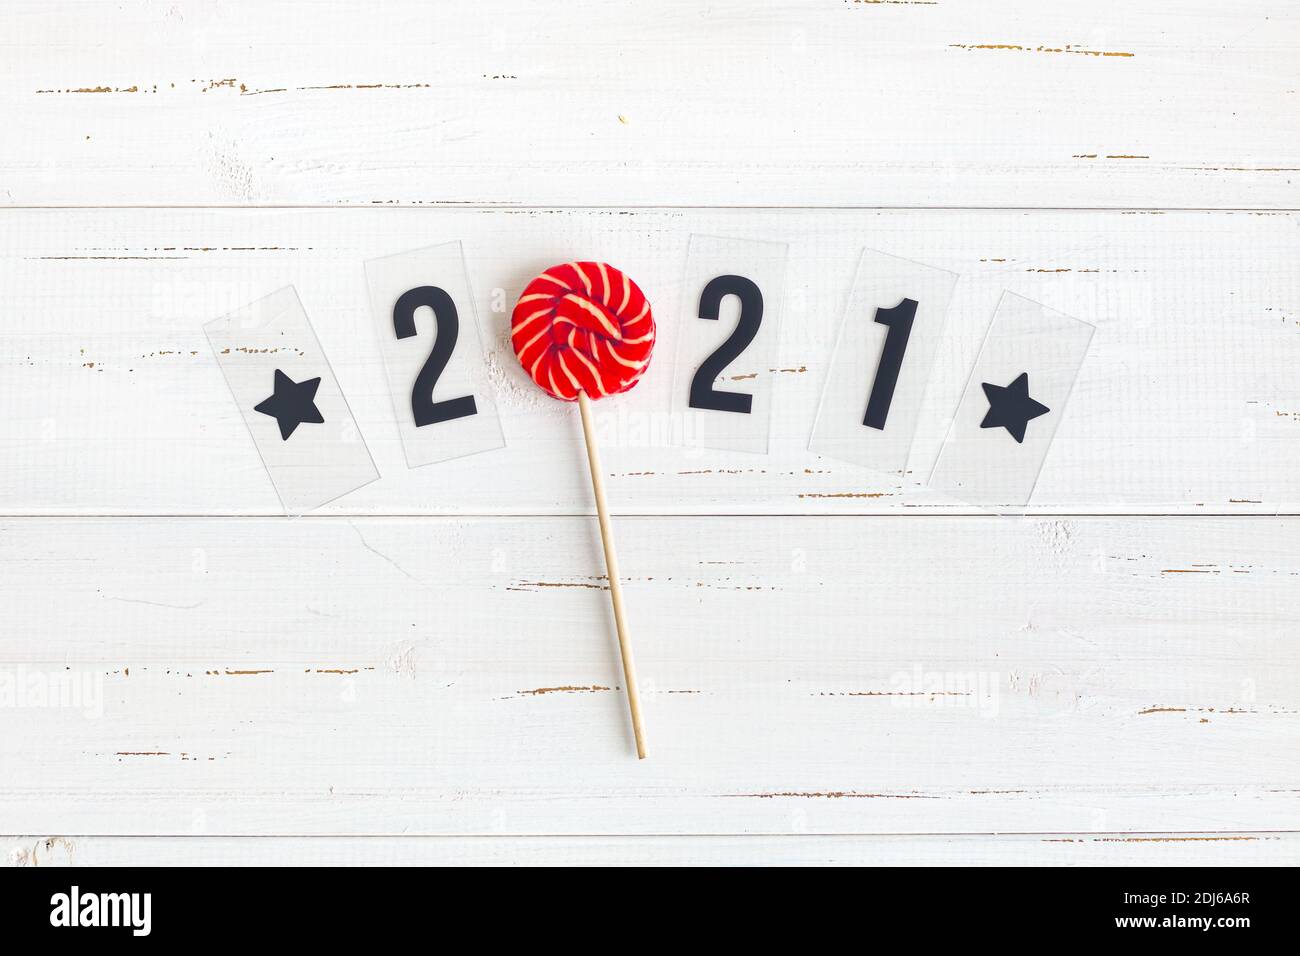 Lettrage 2021 et Lollipop rouge et blanc sur les panneaux de sorbette légère. Vue de dessus, plan d'appartement. Banque D'Images